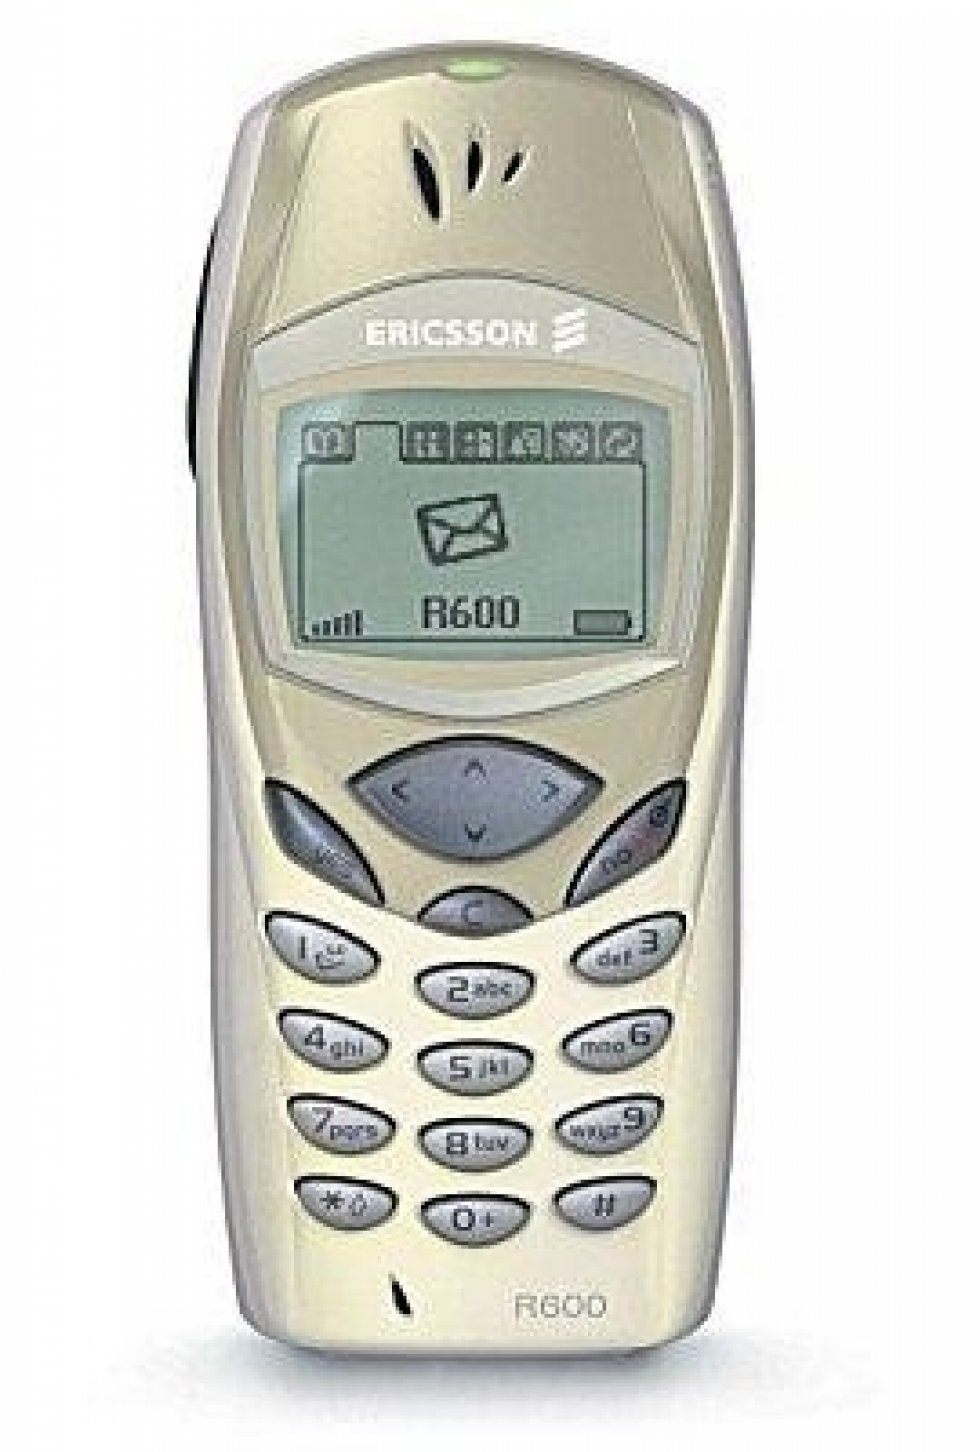 Ericsson R600